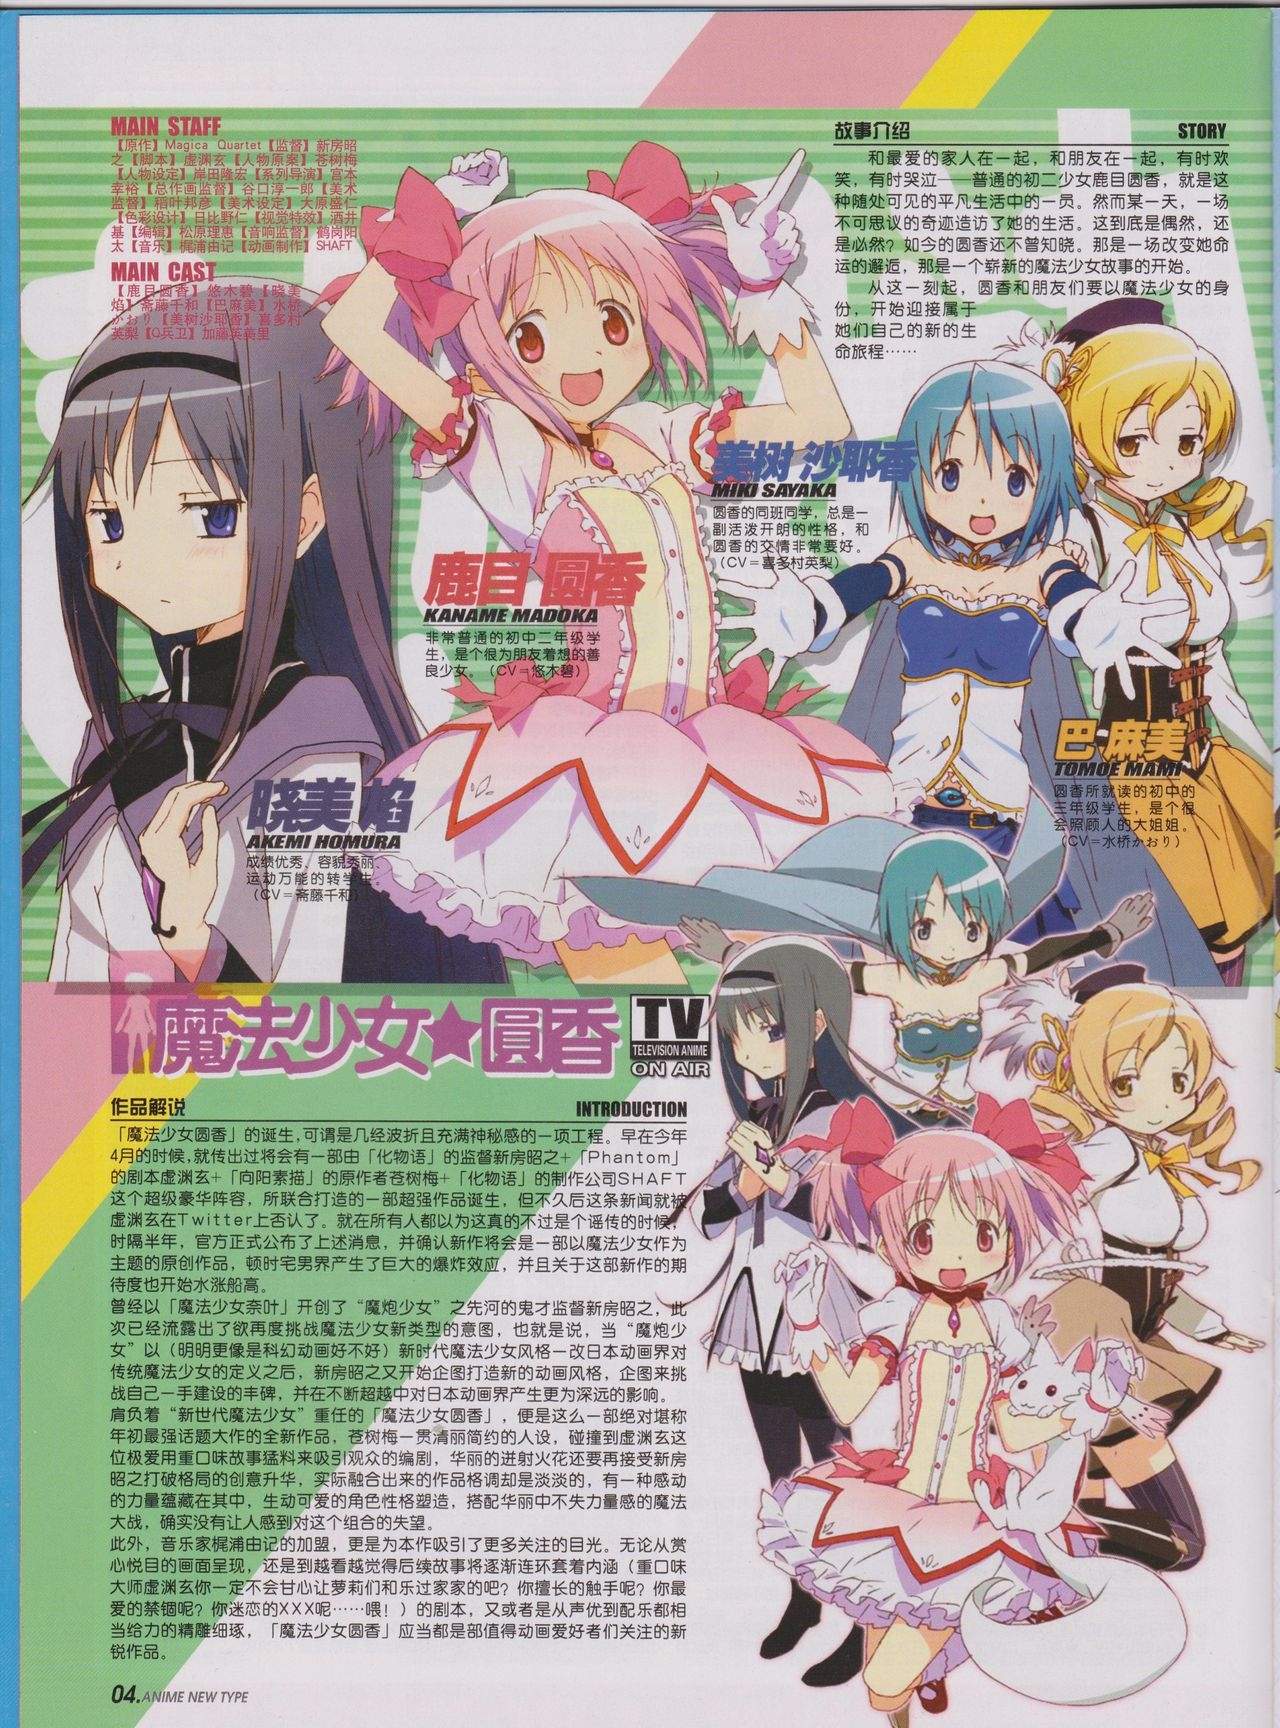 Anime New Type Vol.096 5